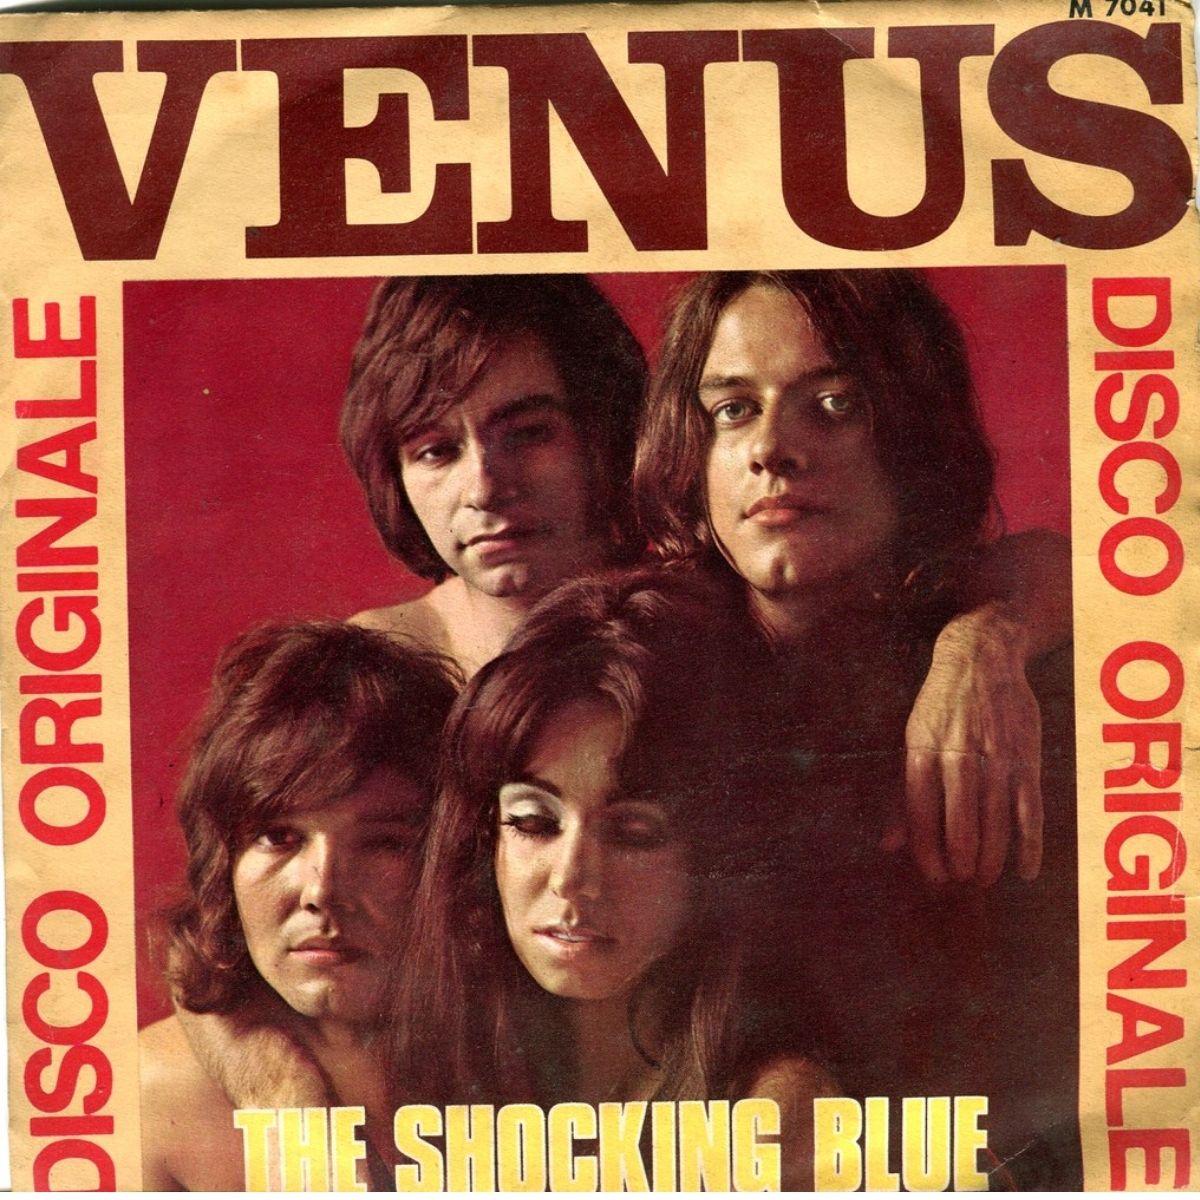 Capa da única "Vênus" do Shocking Blue